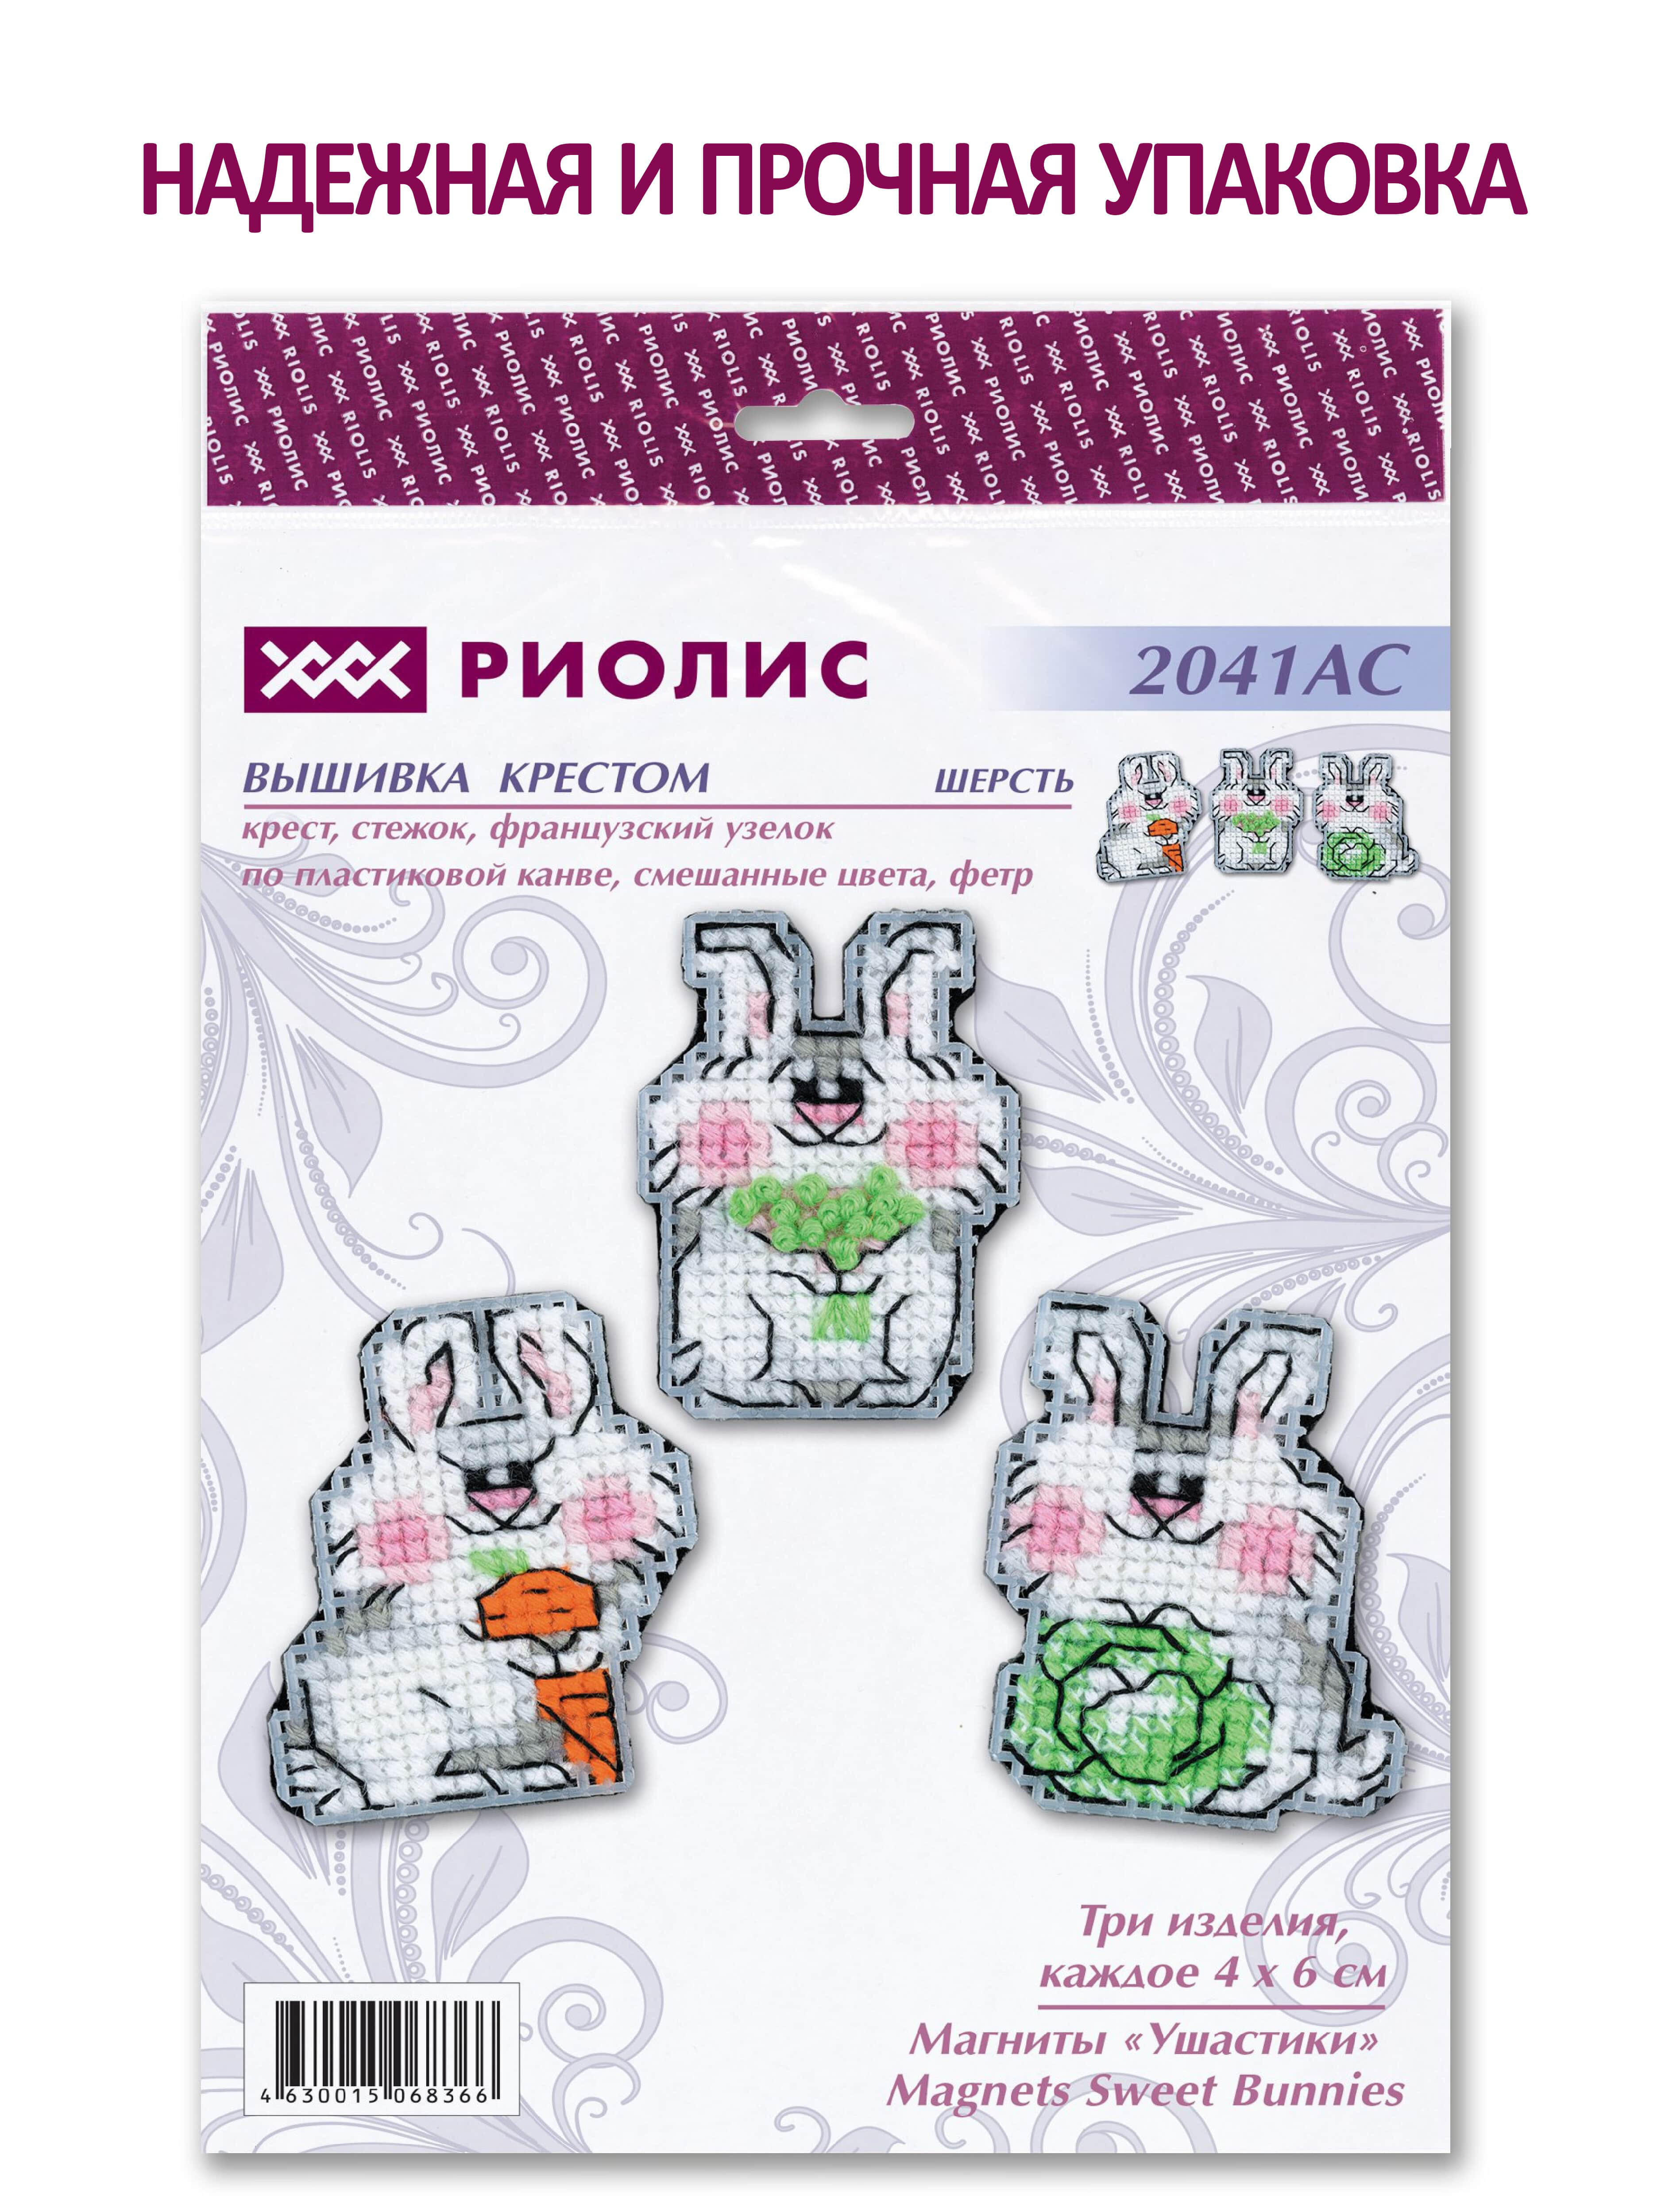 Купить набор для вышивания магнитов в интернет-магазине centerforstrategy.ru